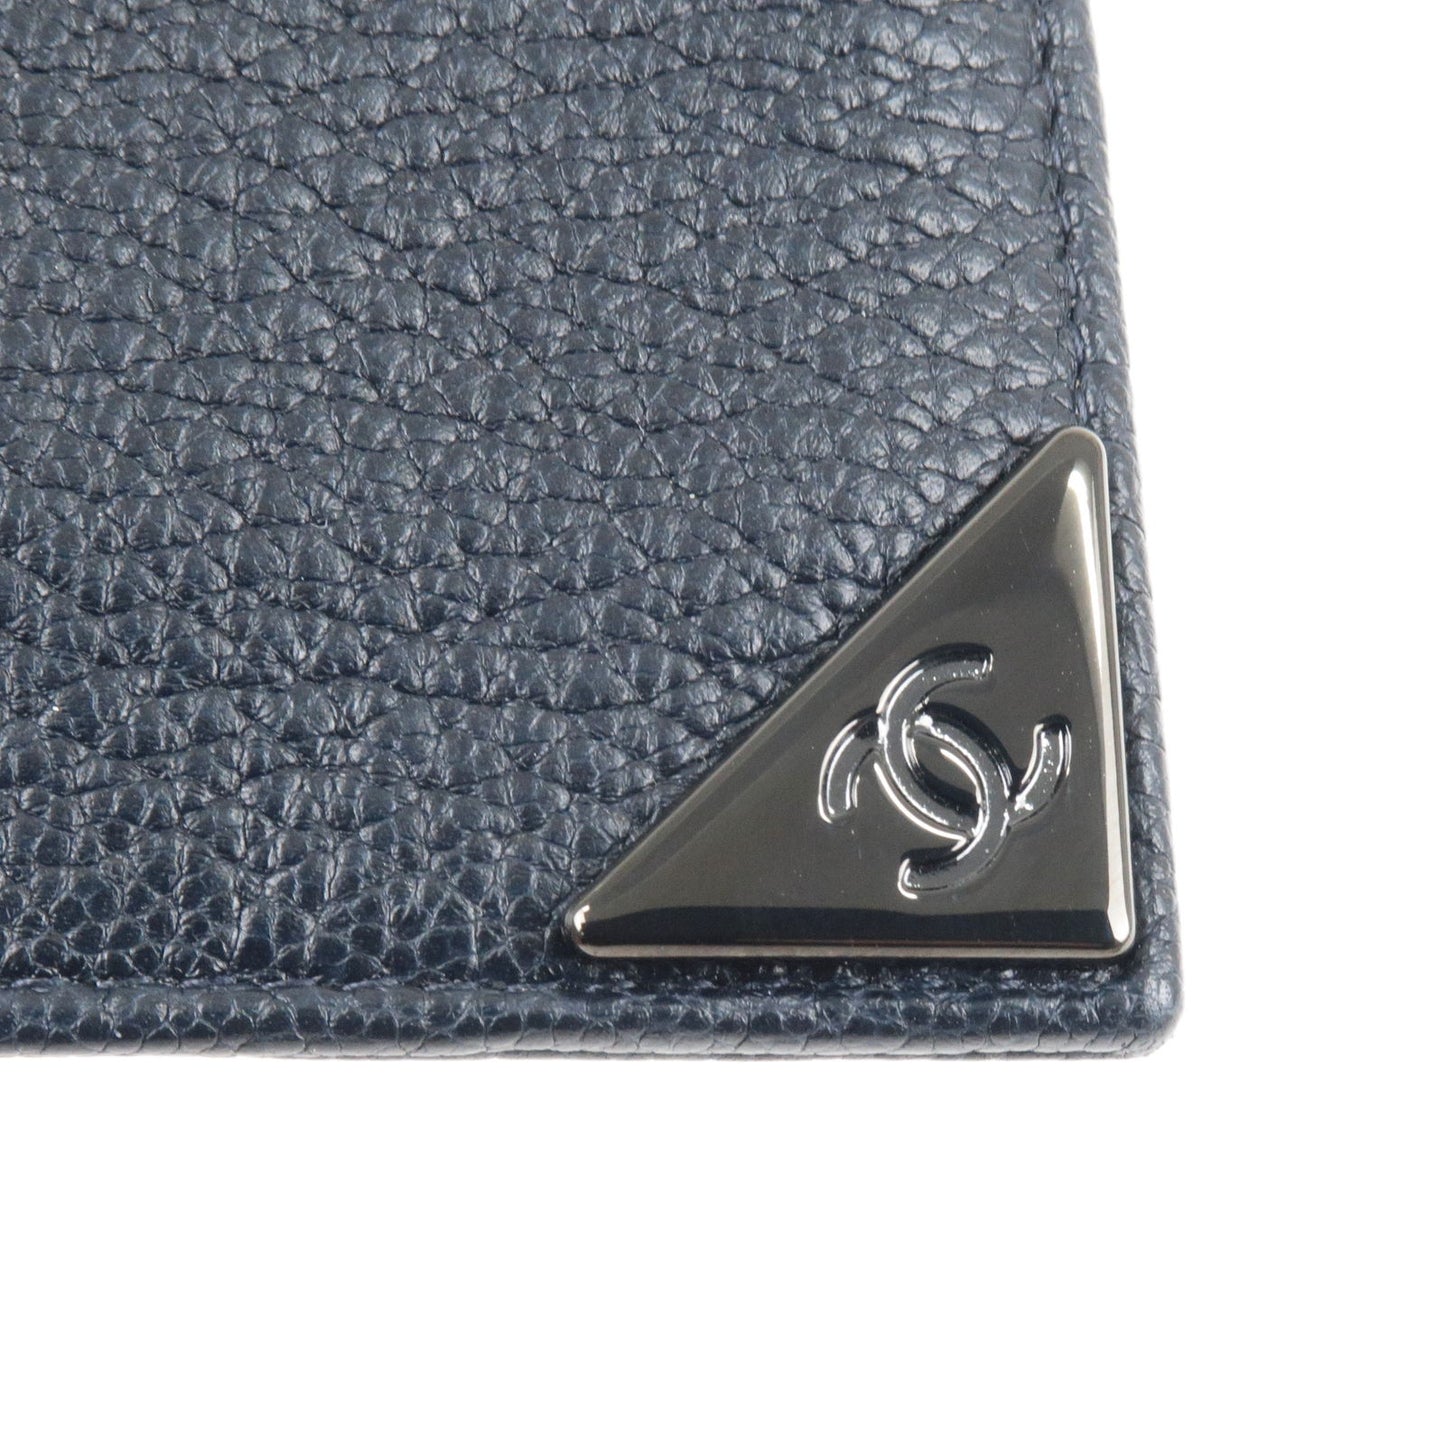 CHANEL Logo Calf Leather Card Case Pass Case Navy